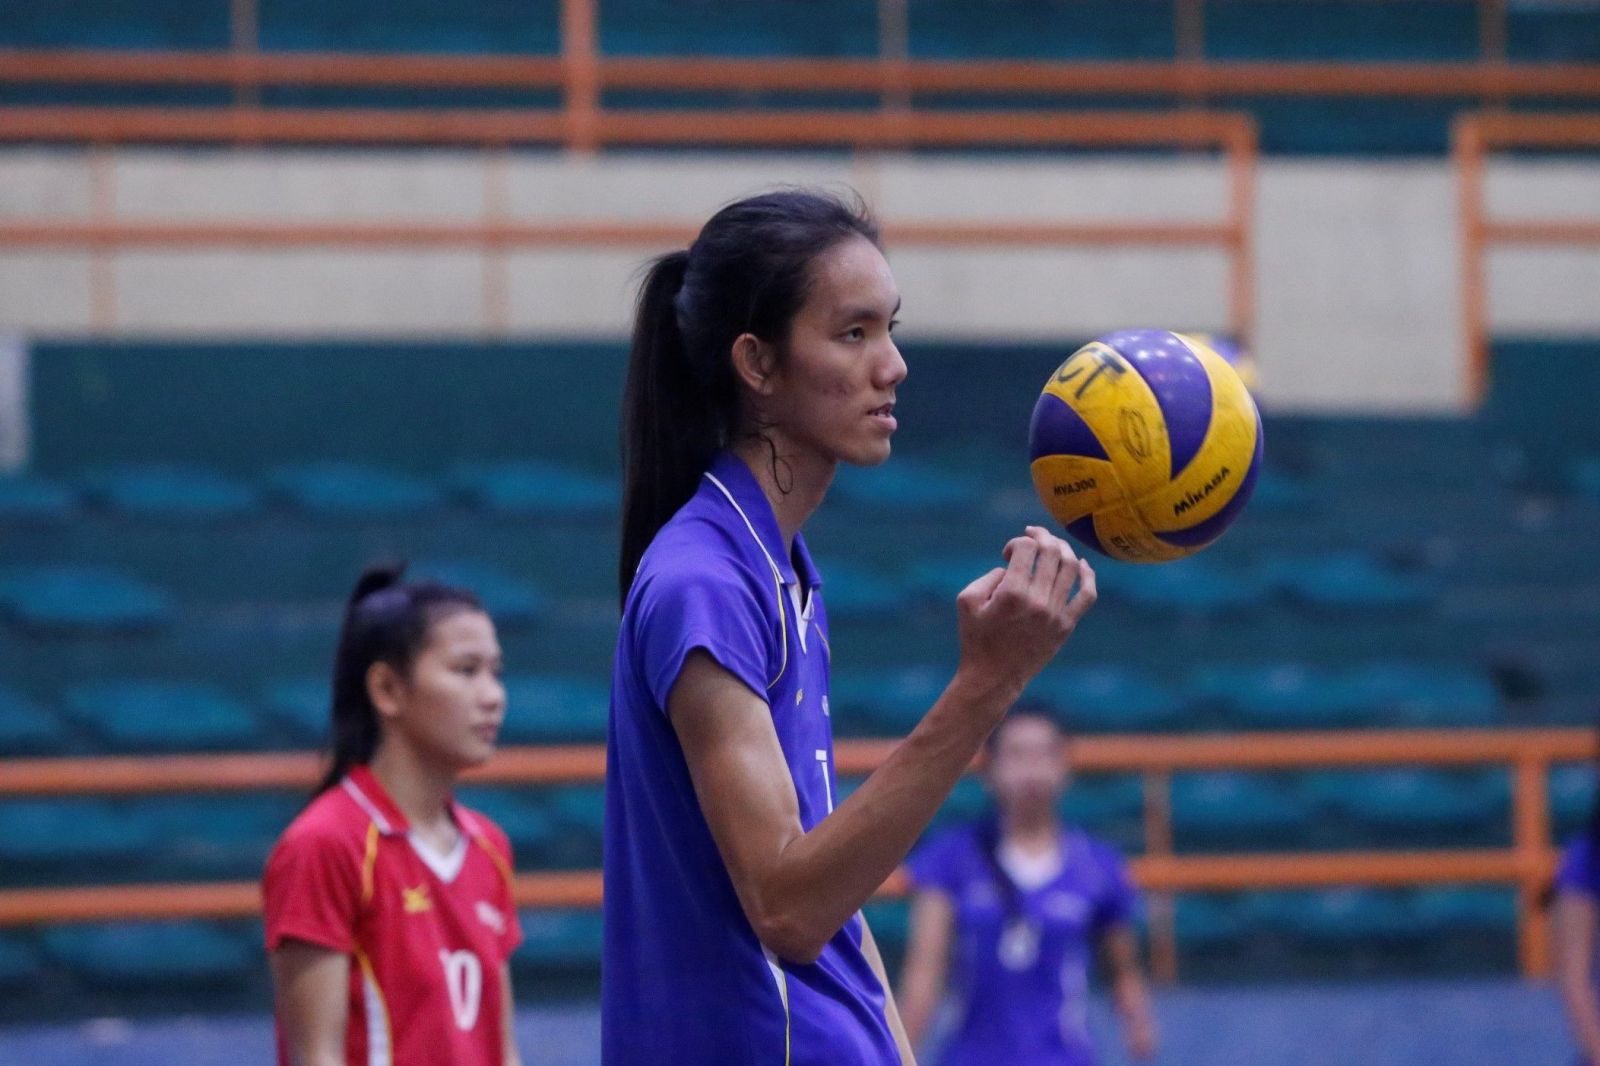 Đội hình 6 "chân dài" giúp ĐT bóng chuyền nữ Việt Nam cao thứ nhì... châu Á - Ảnh 3.